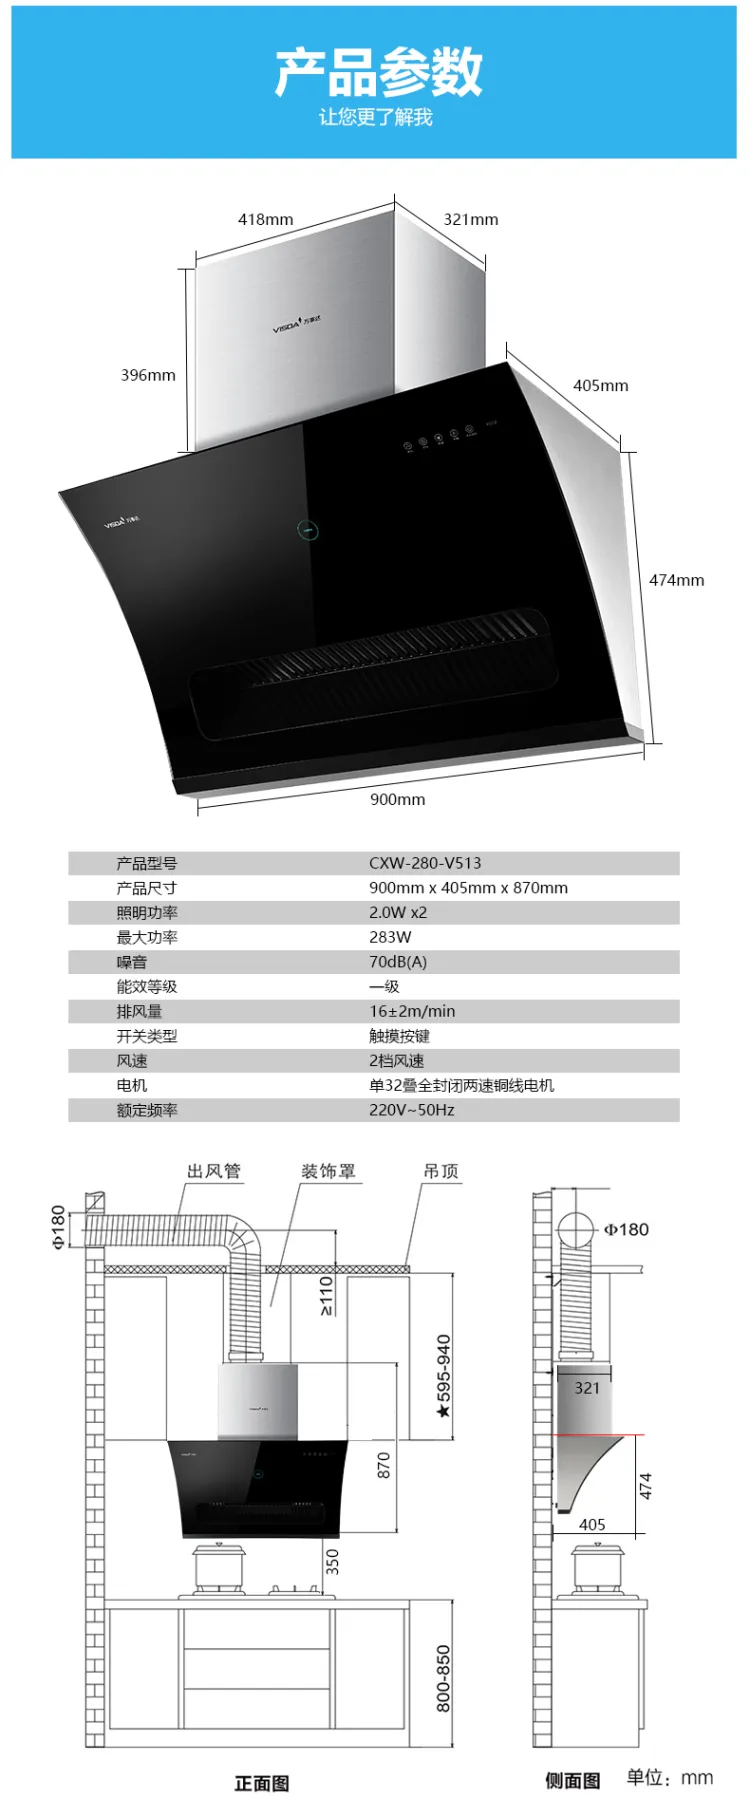 e2e建材新零售平台 万事达CXW-280-V513大吸力智能烟感抽油烟机(图11)